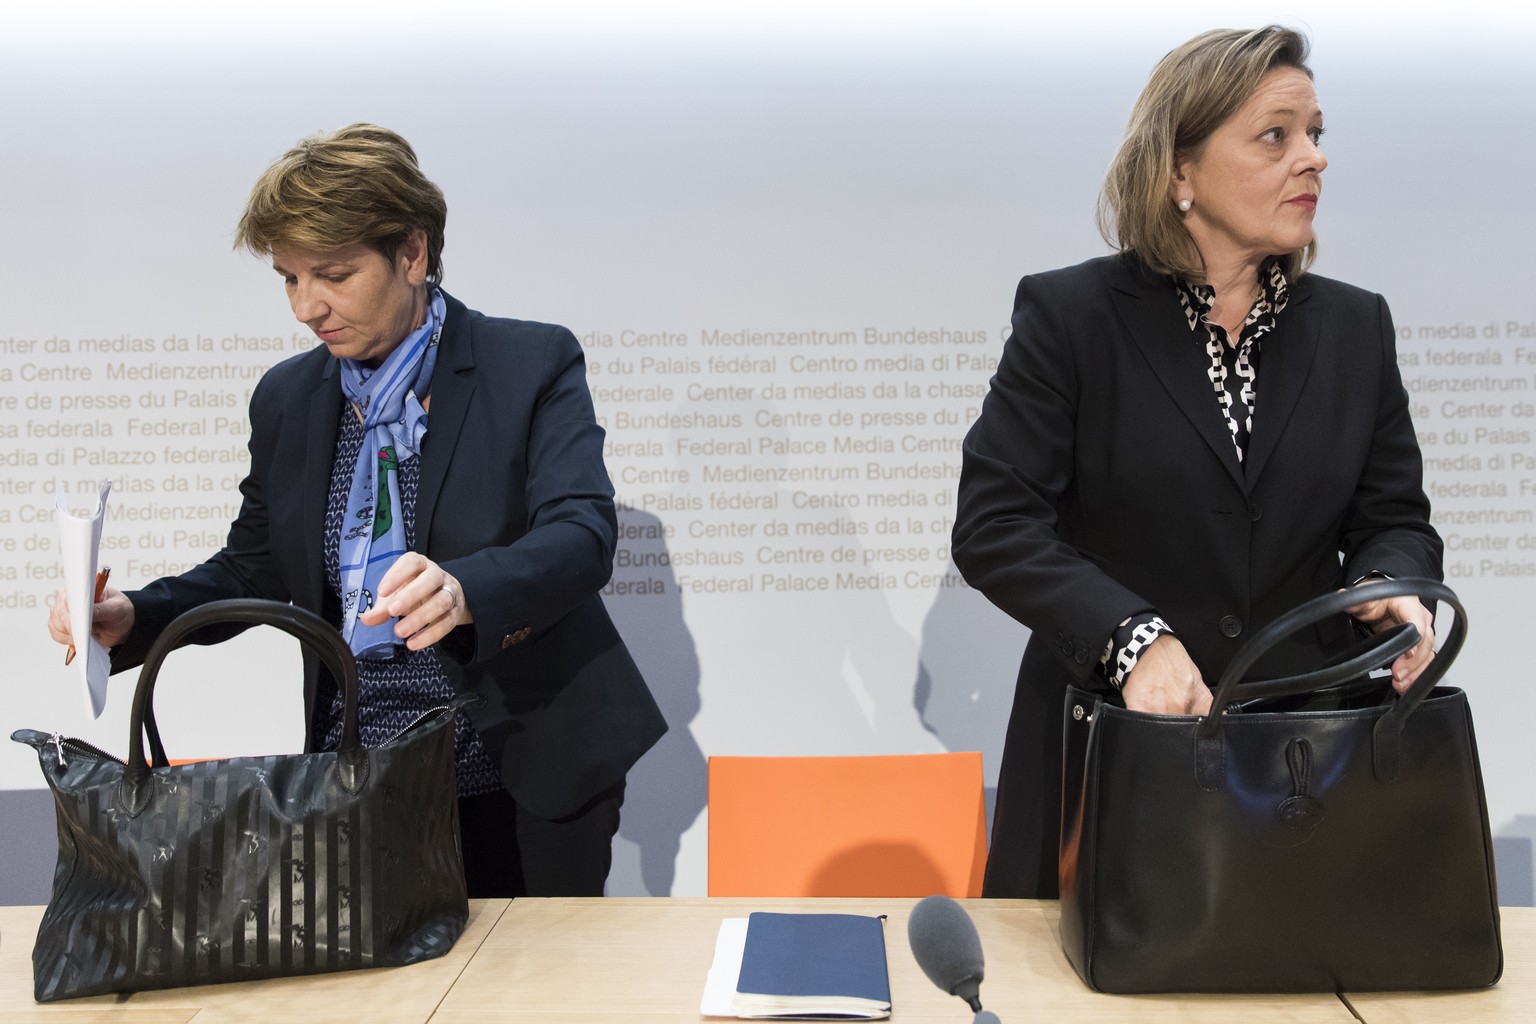 Die beiden nominierten CVP-Bundesratskandidatinnen Viola Amherd, links, und Heidi Zgraggen, rechts, am Ende einer Medienkonferenz, am Freitag, 16. November 2018 in Bern. (KEYSTONE/Peter Klaunzer)